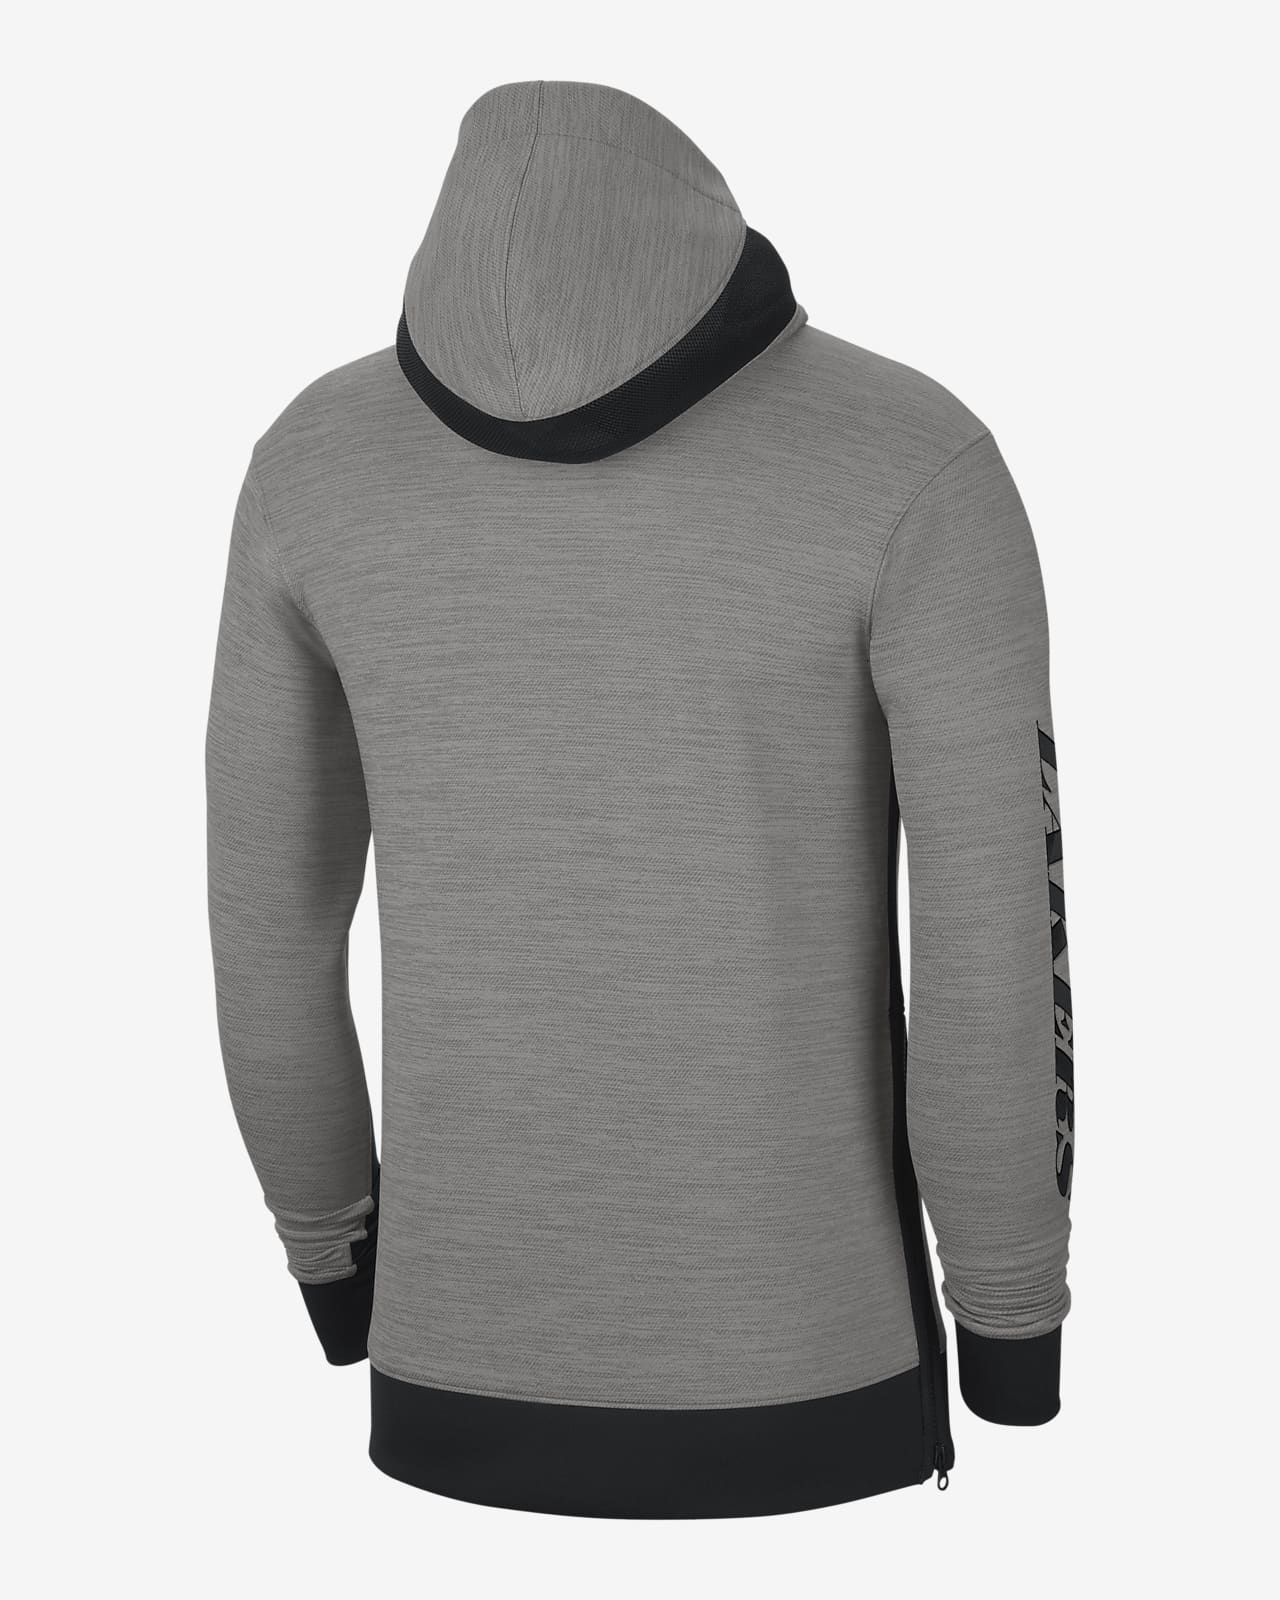 nike lakers hoodie grey